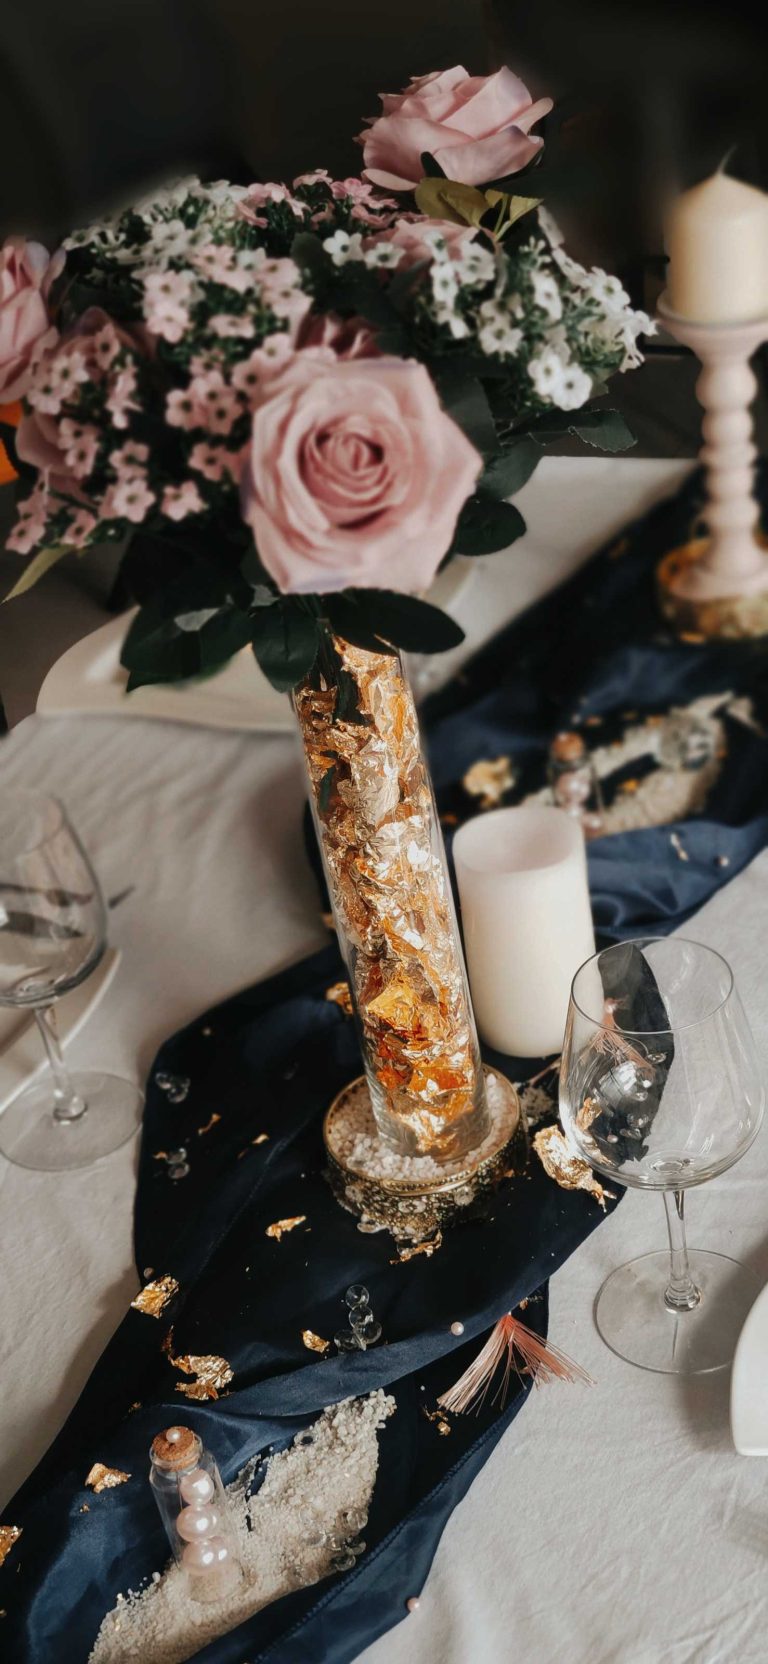 Décoration de table de mariage avec bouquets de roses, bougies et accents dorés sur nappe bleu nuit.